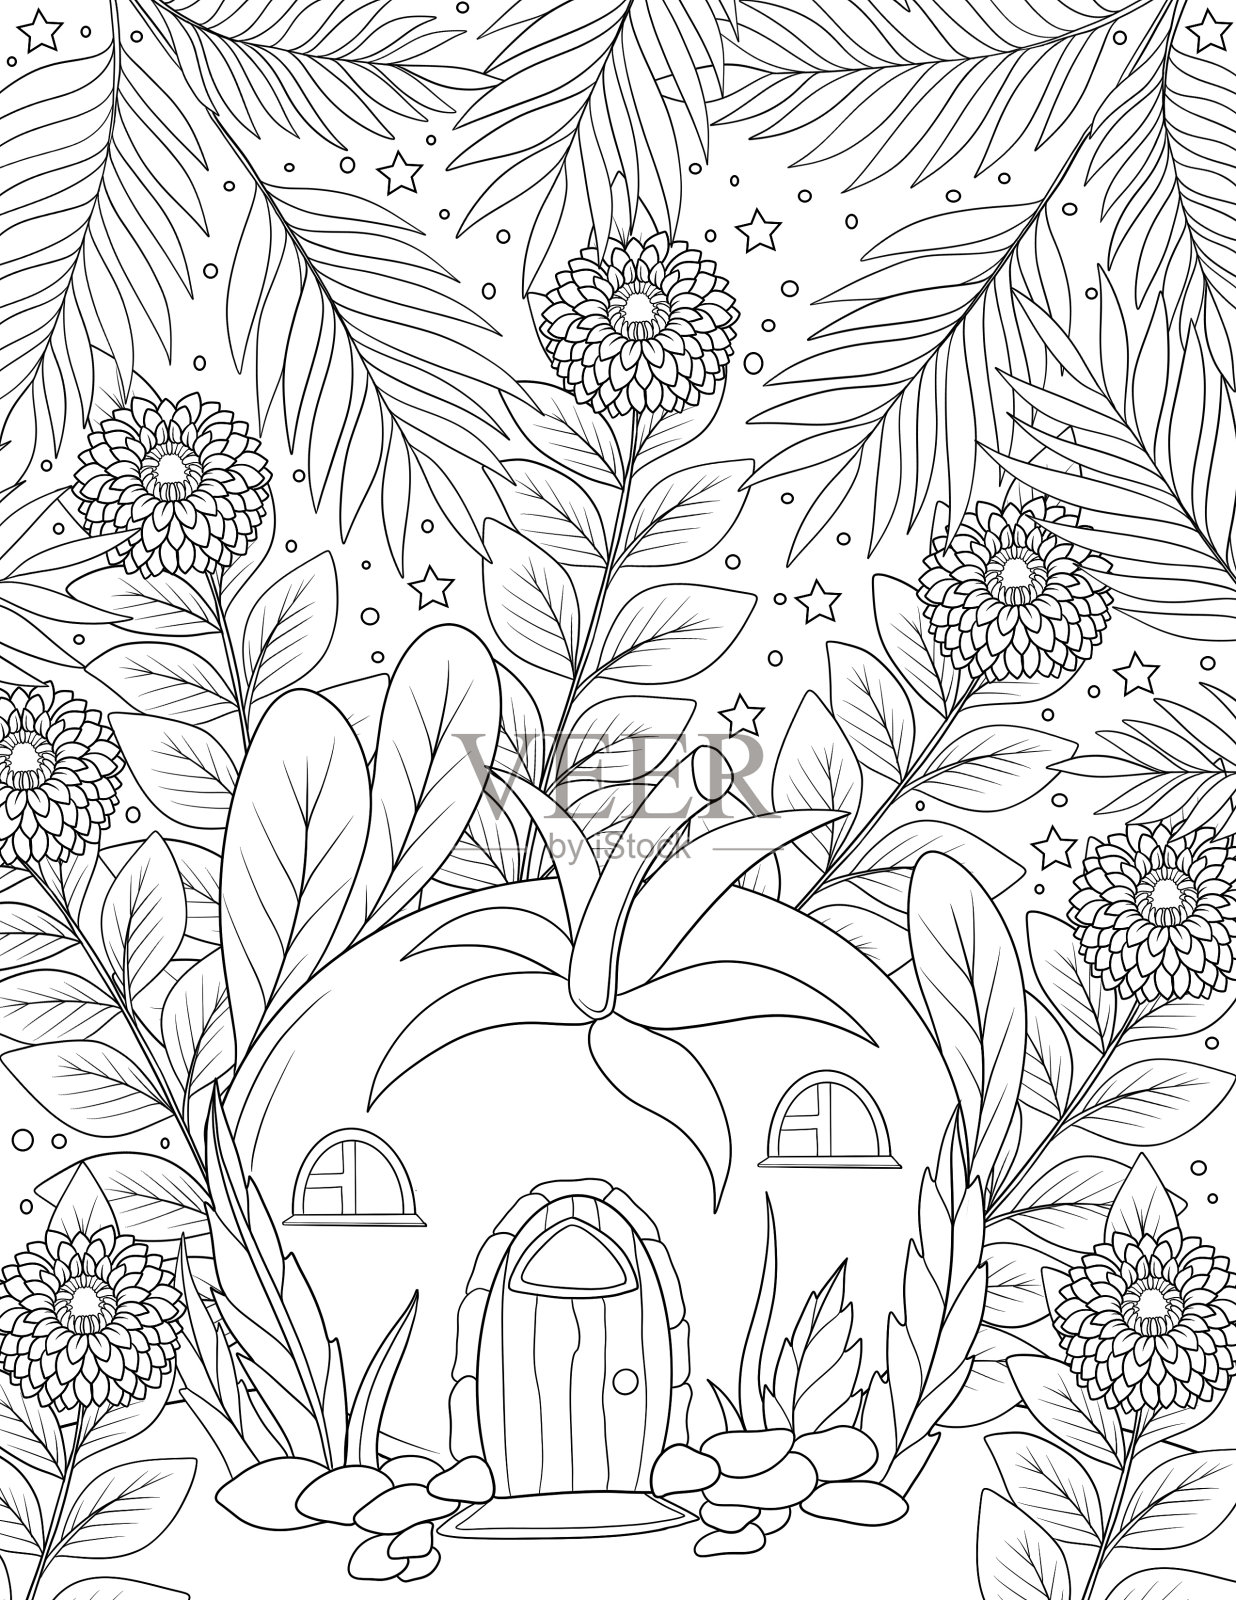 秘密花园·线稿·无上色 - 堆糖，美图壁纸兴趣社区